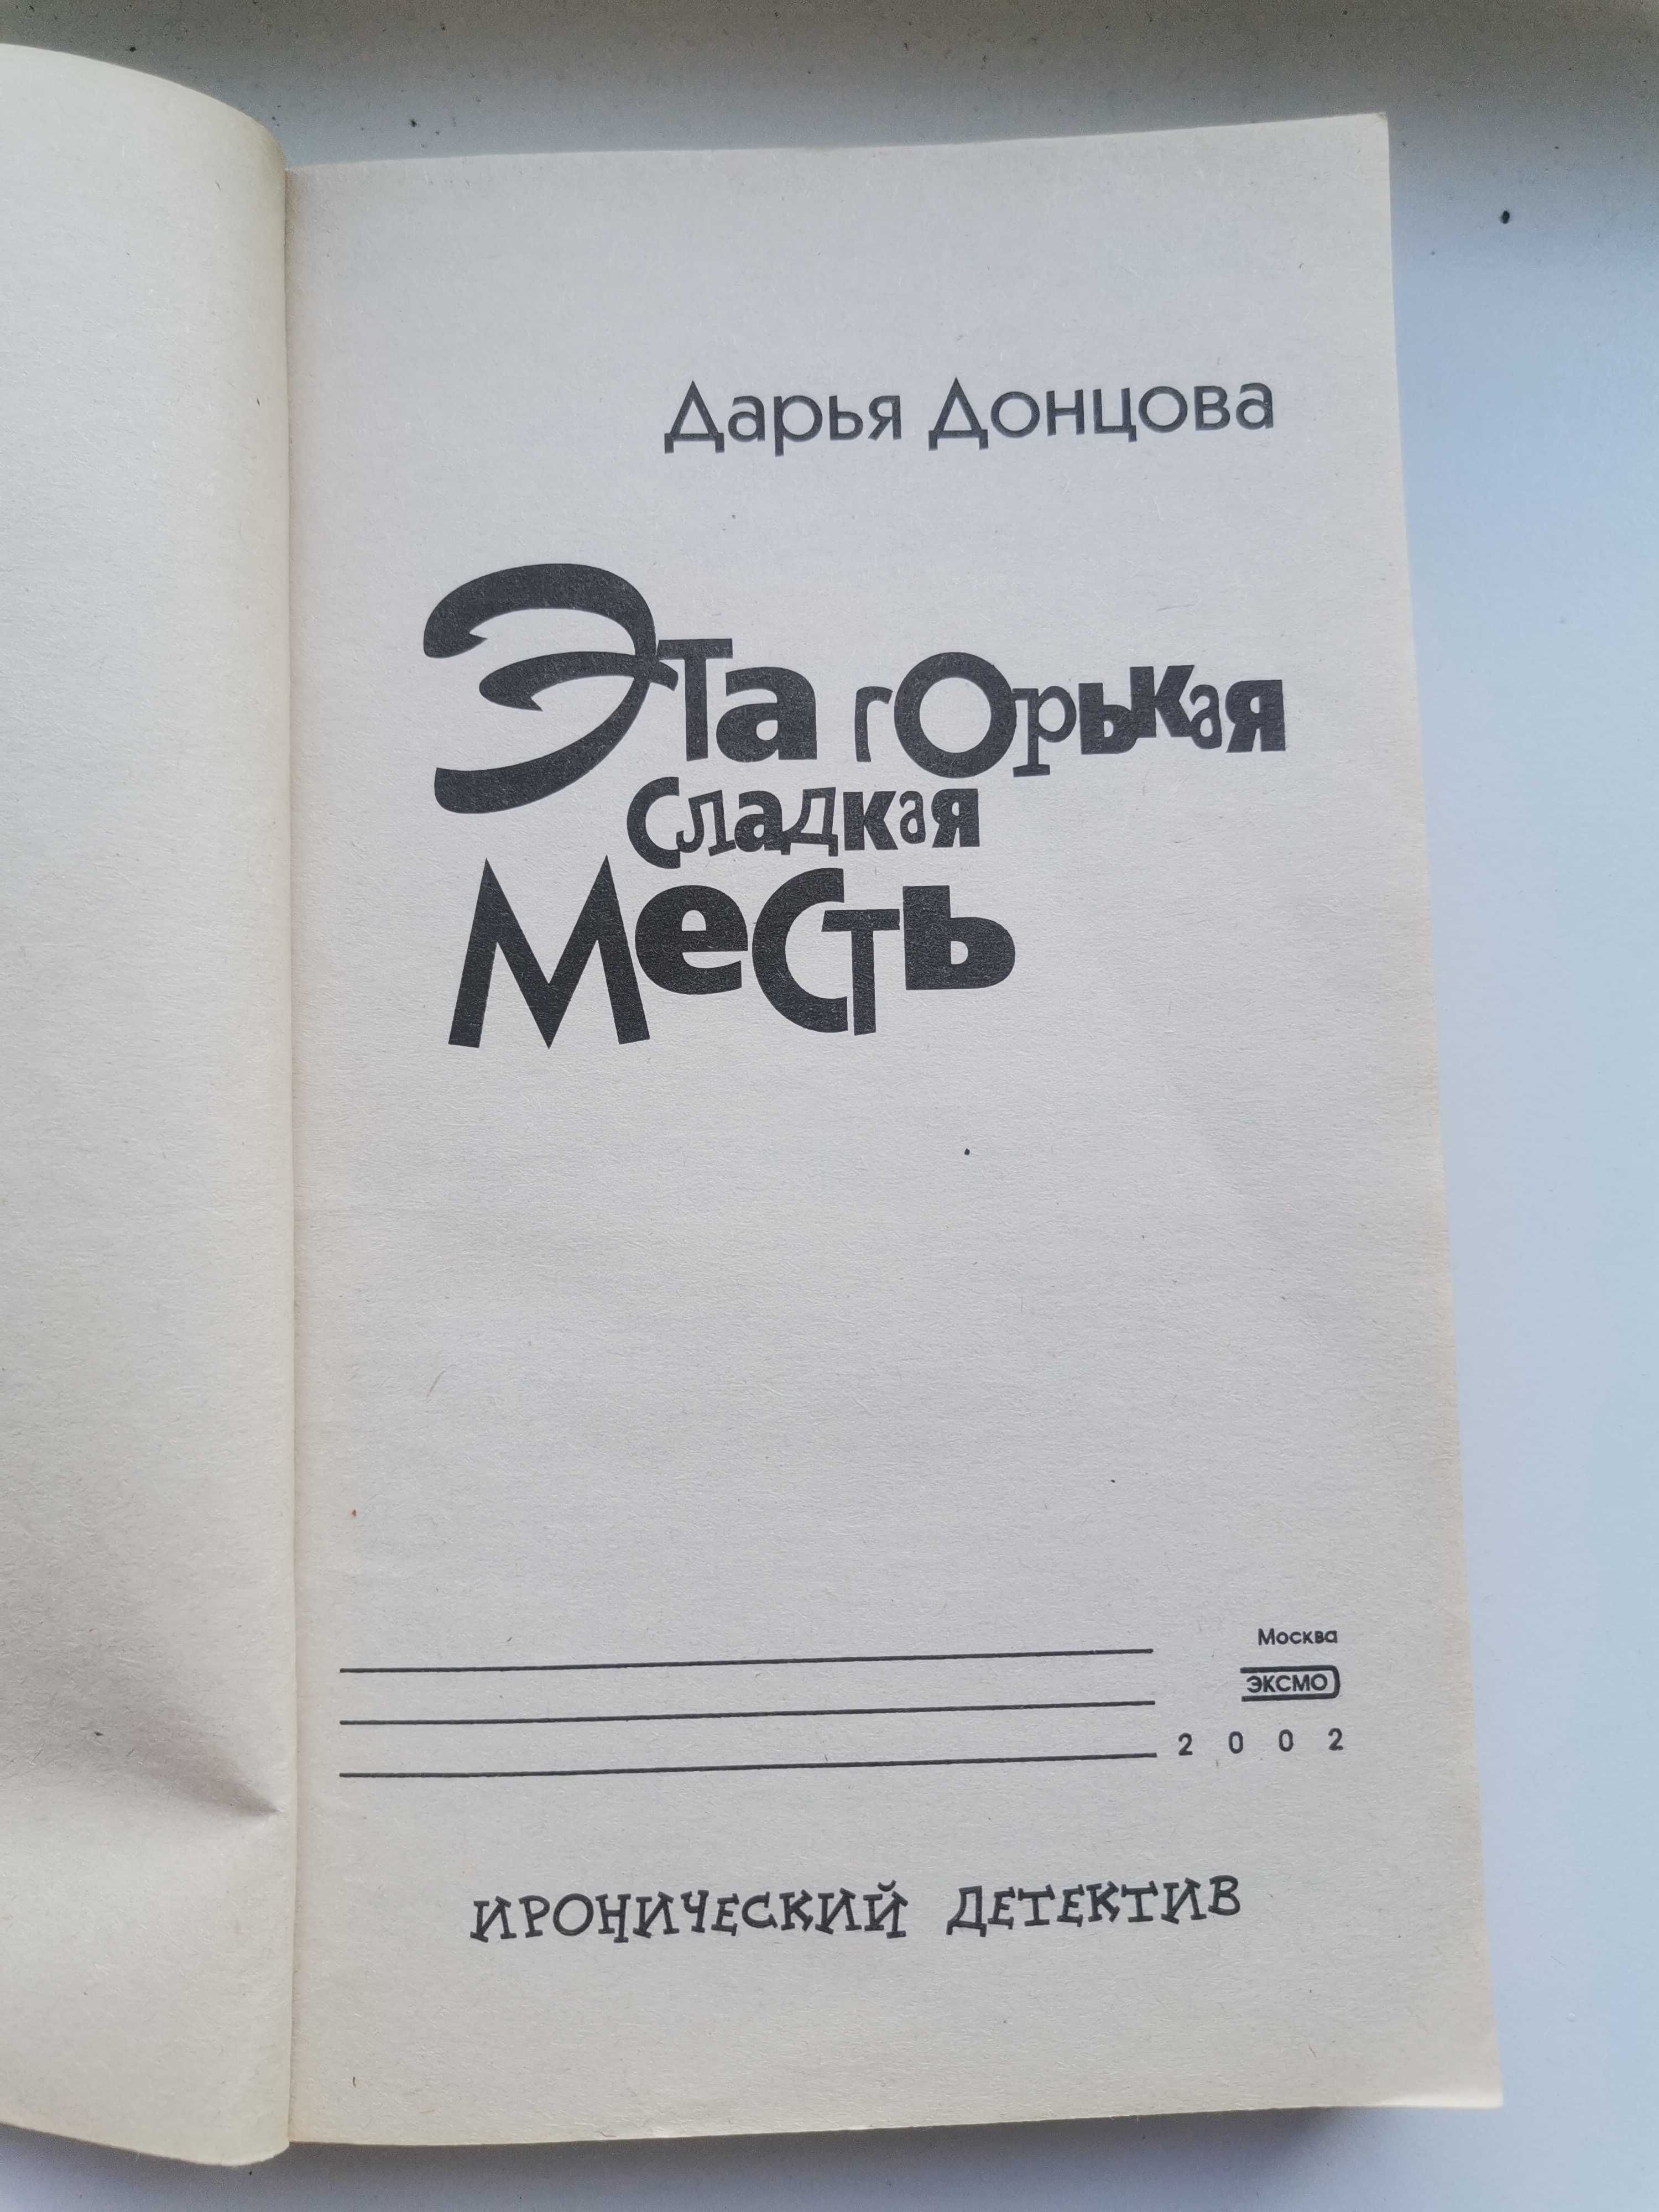 Книга Д. Донцова "Эта горькая сладкая месть"